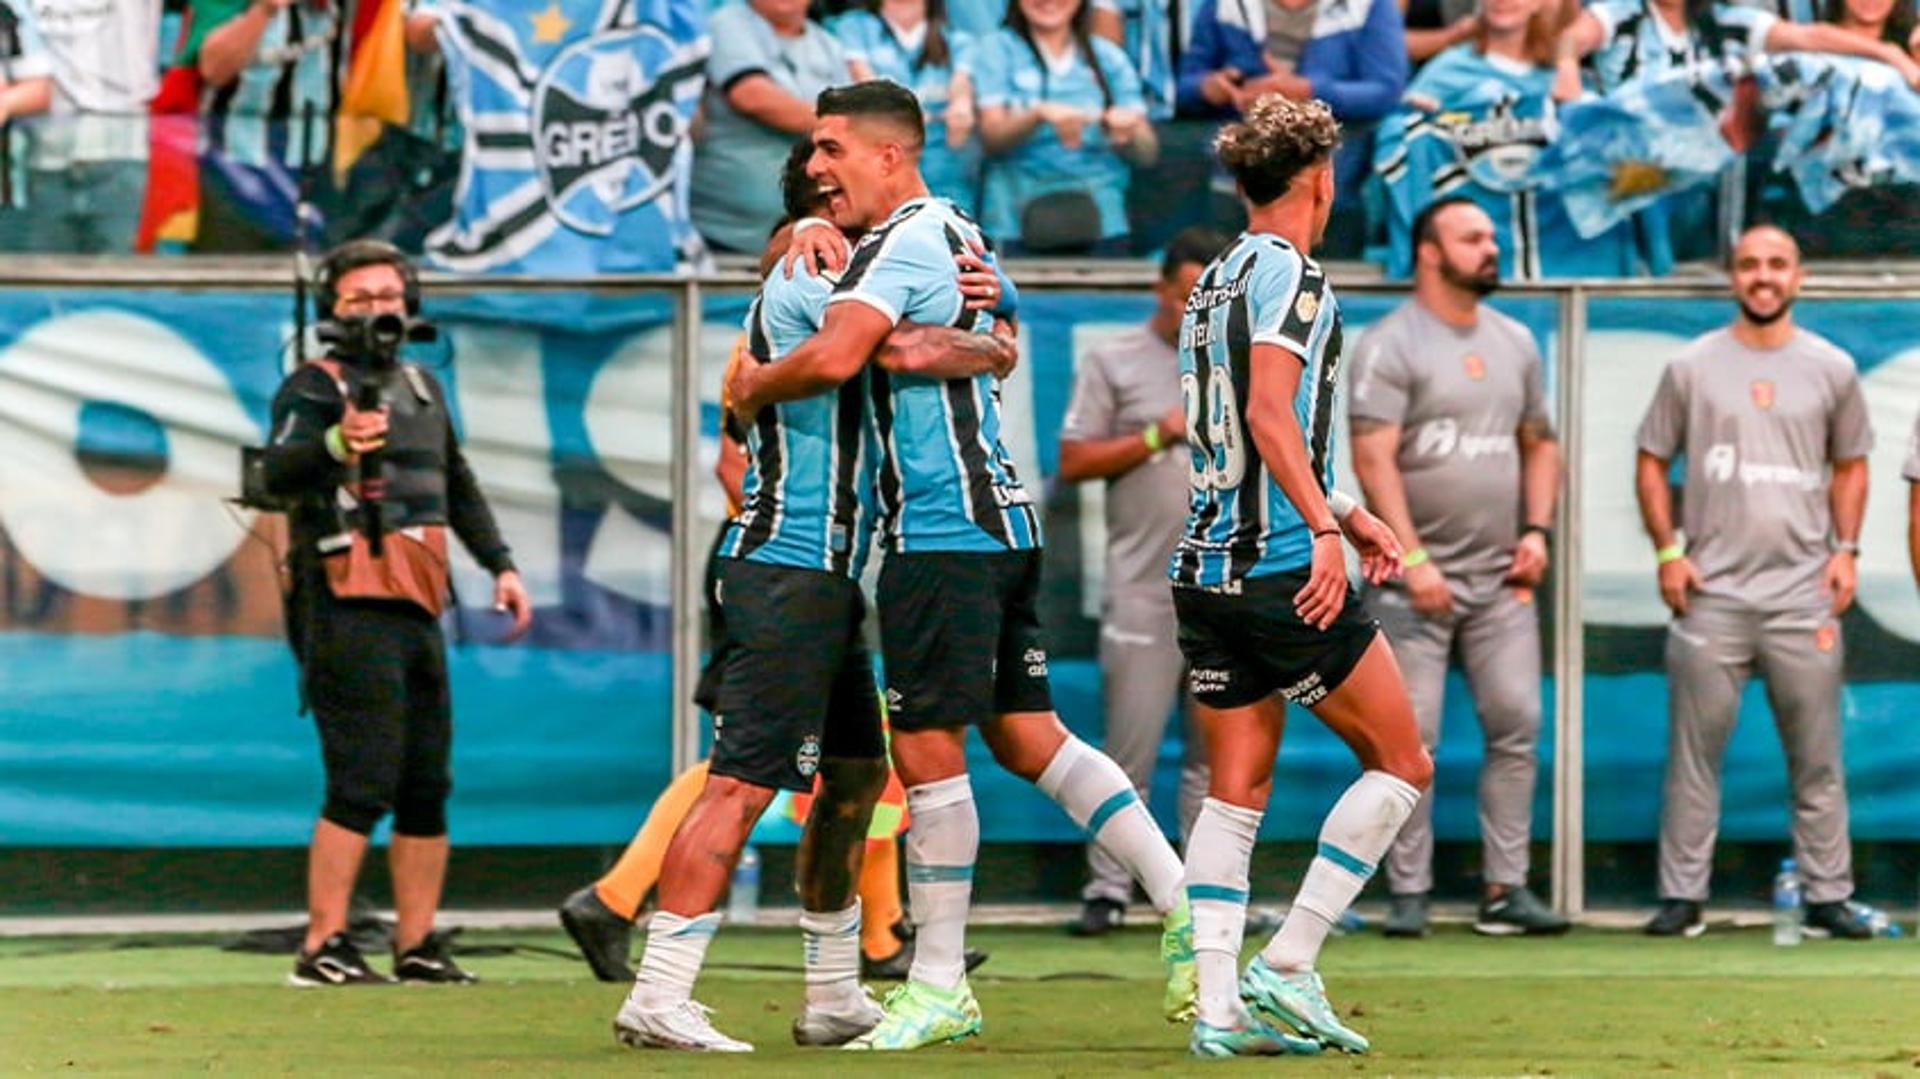 Grêmio x Caxias